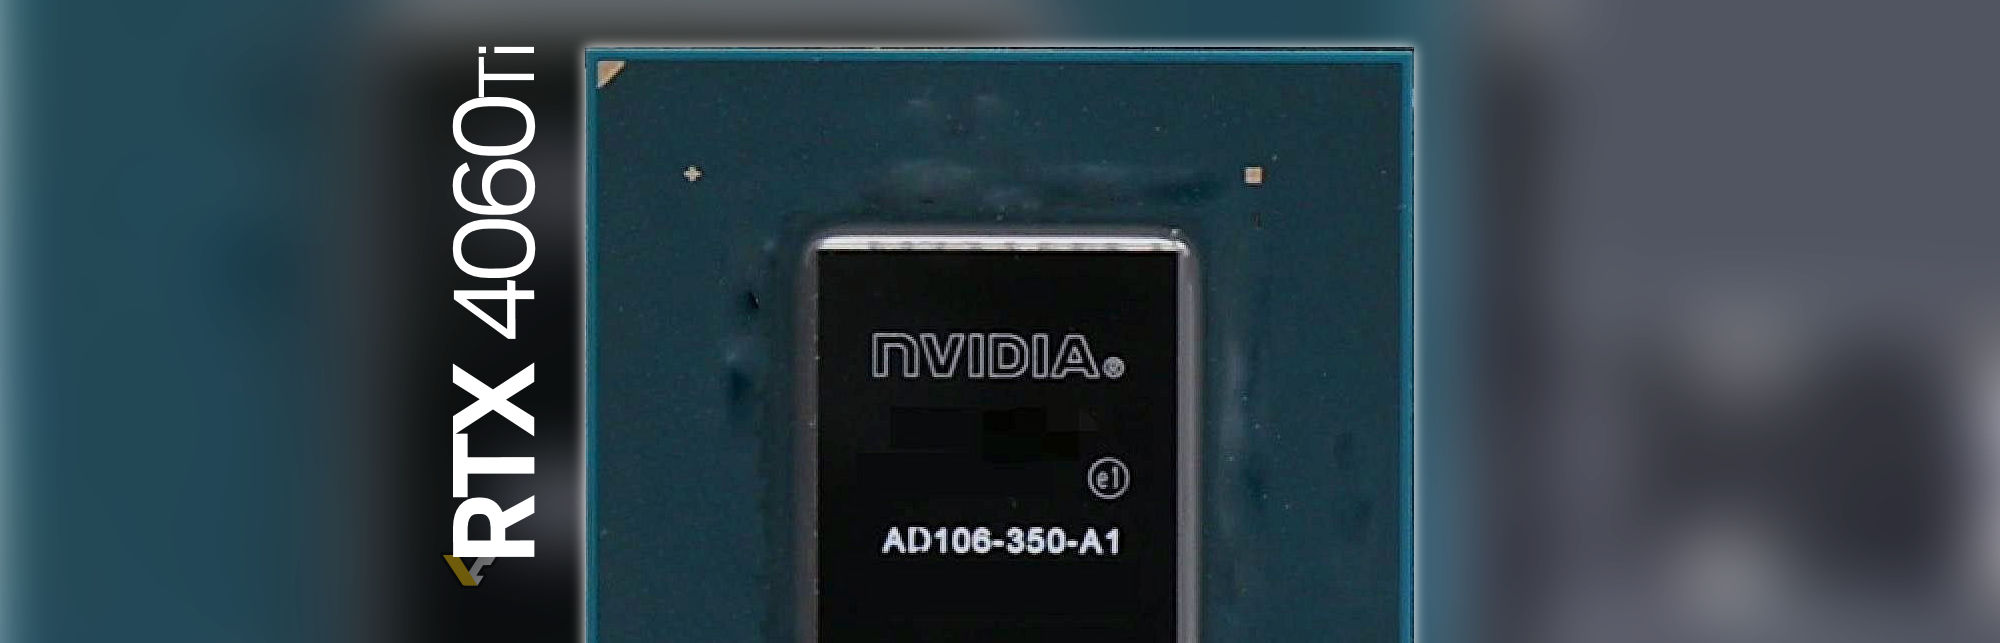 NVIDIA-AD106-GPU-HERO-BANNER.jpg